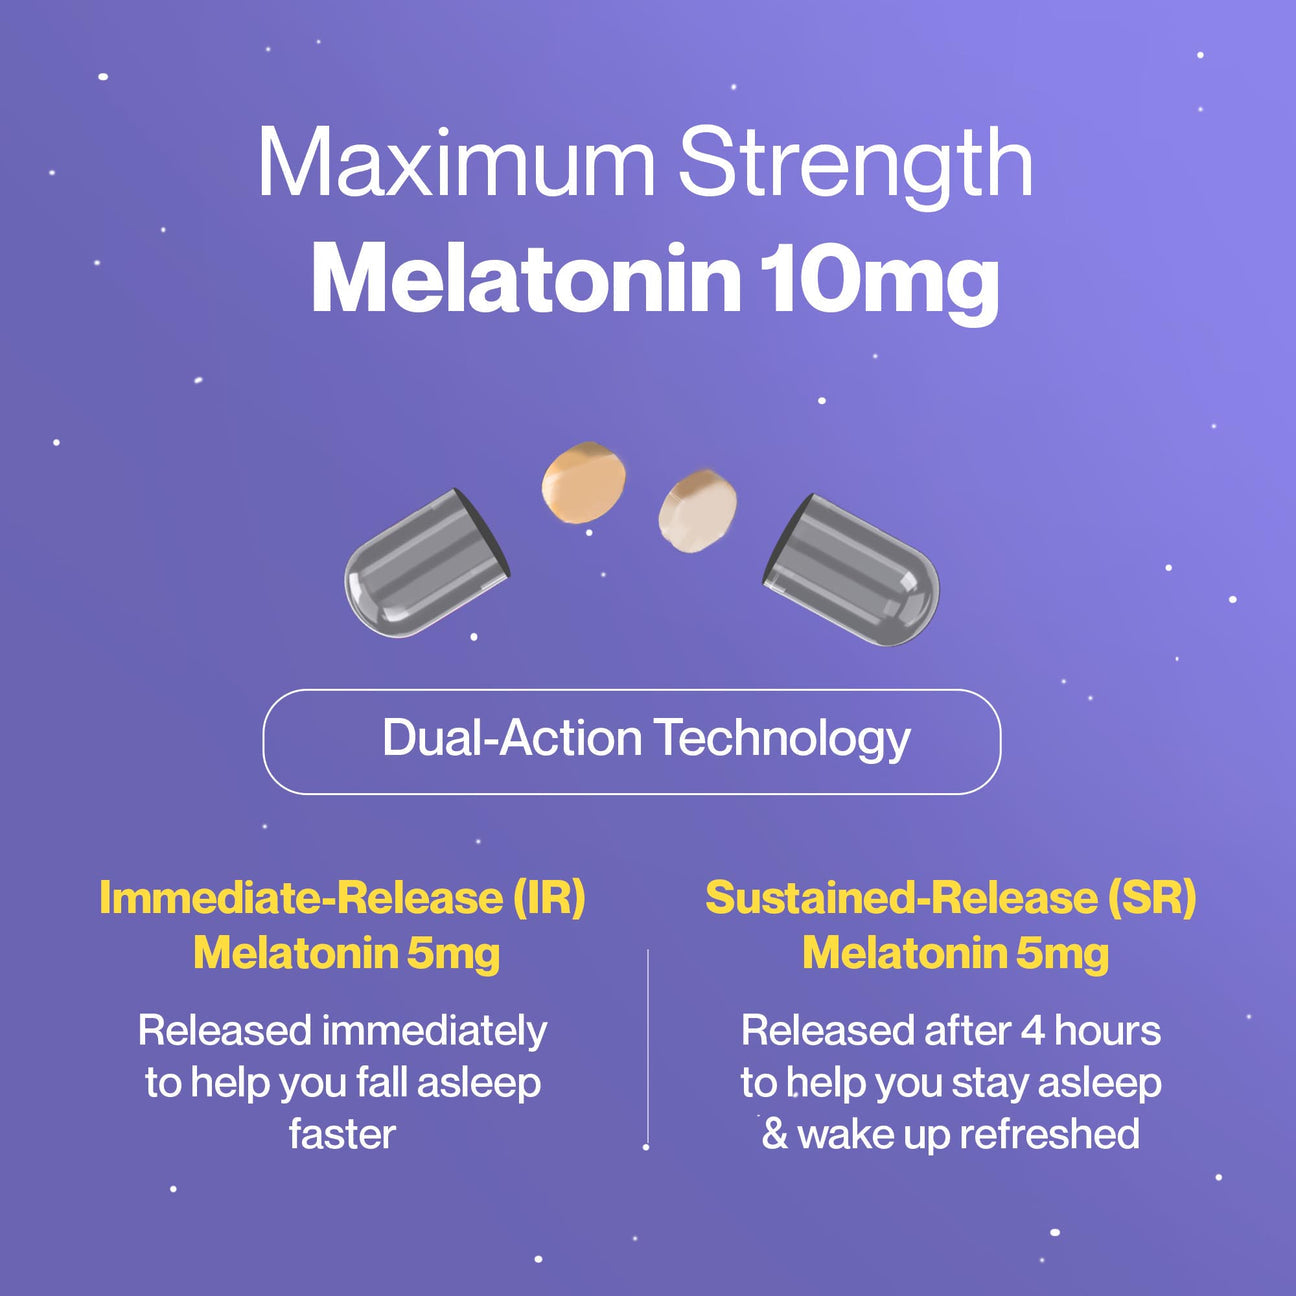 Sleep: Sustain - Melatonin 10 mg